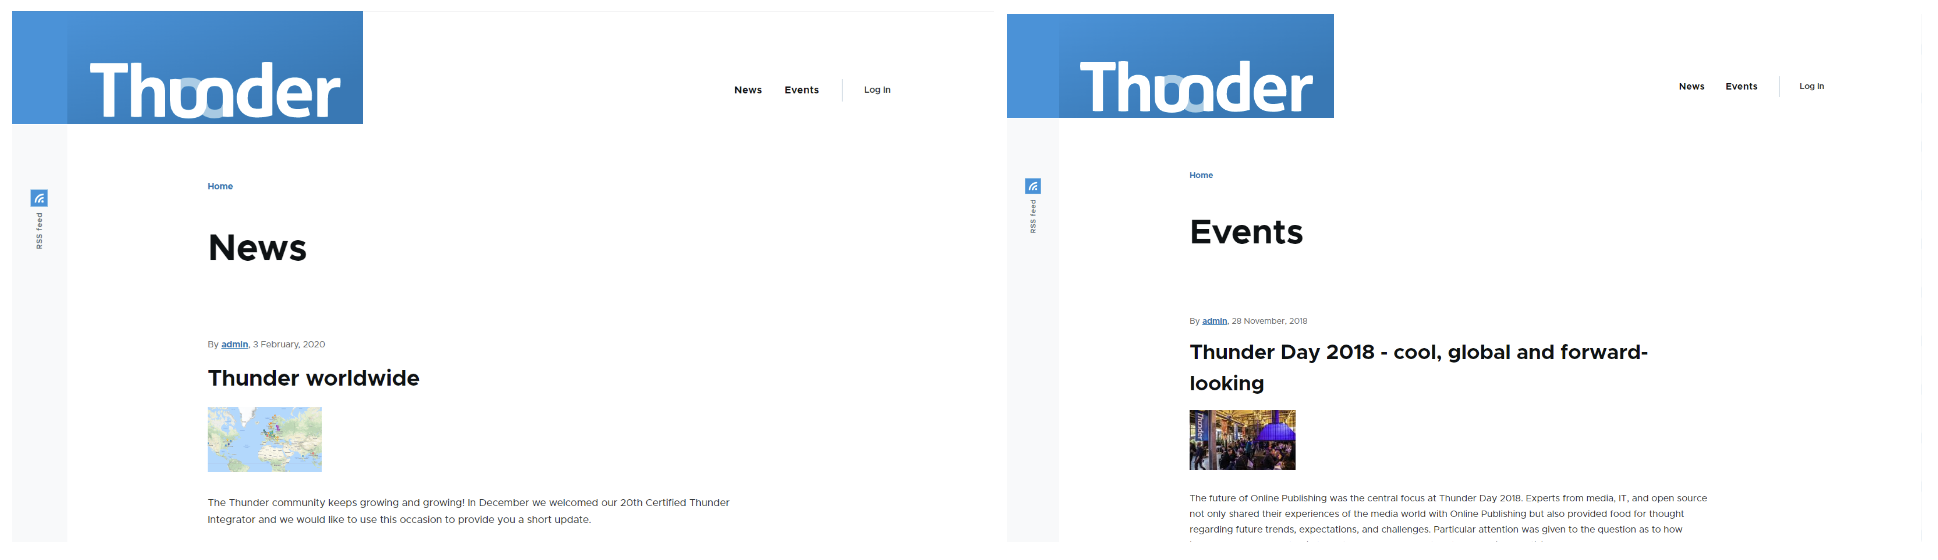 News i Events to dwie przykładowe kategorie, w których możemy dystrybuować treści w Thunder CMS. 